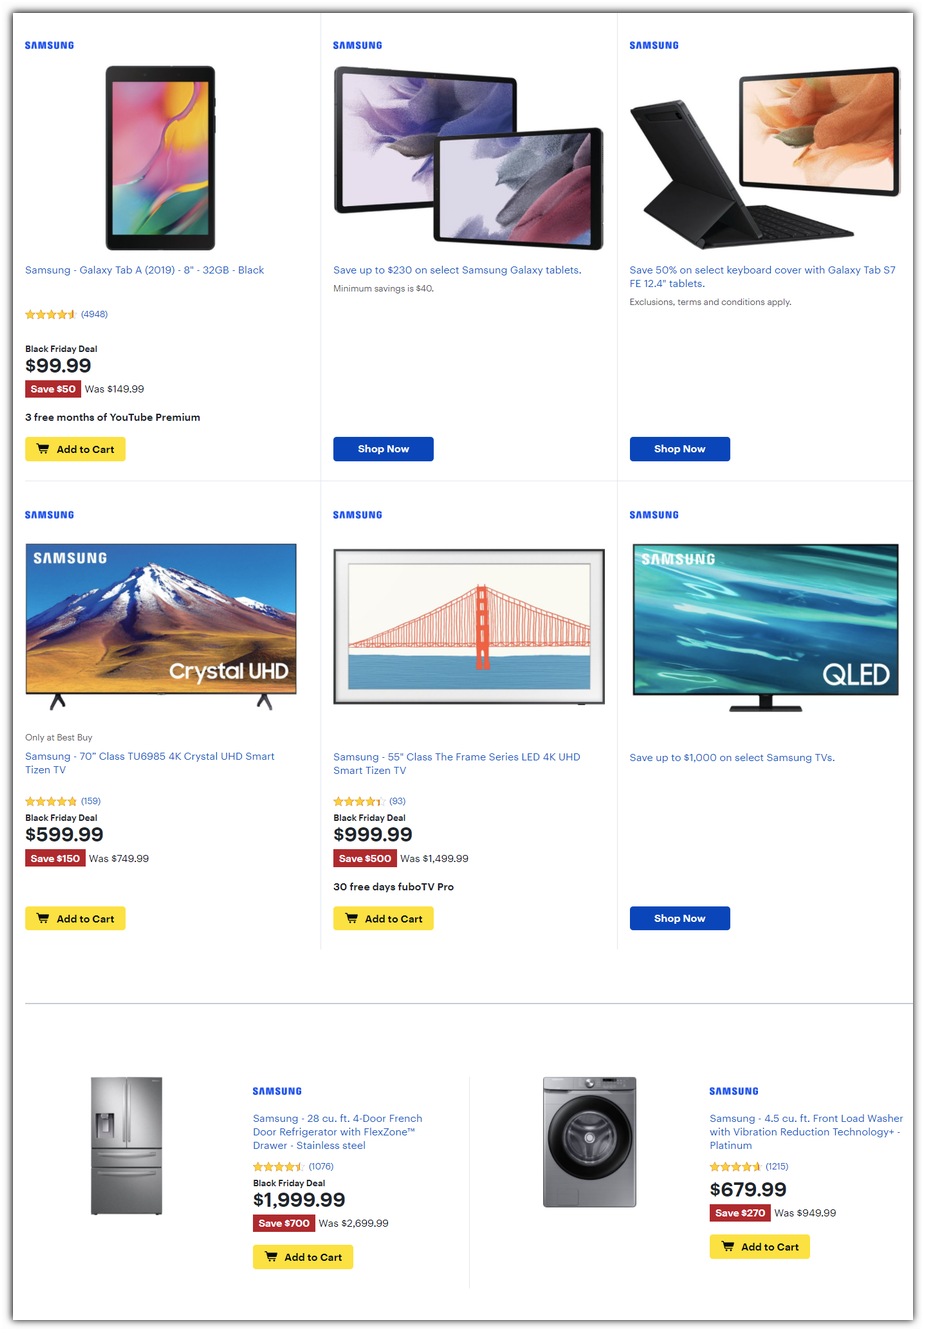 Samsung Tablets / 4K TVs / Appliances